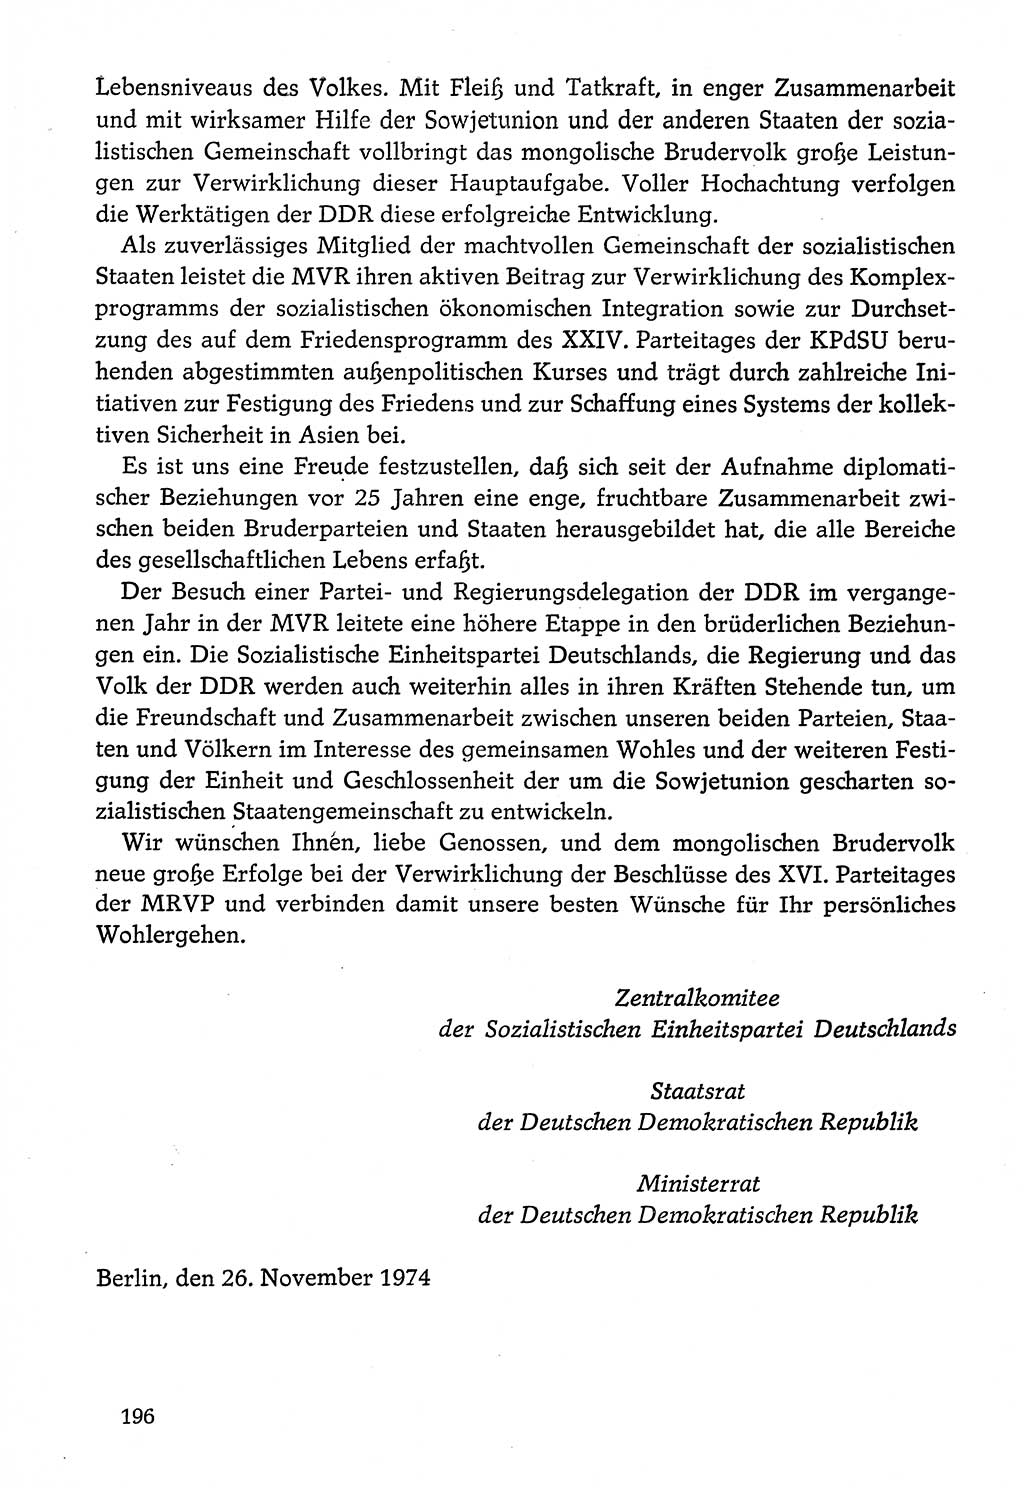 Dokumente der Sozialistischen Einheitspartei Deutschlands (SED) [Deutsche Demokratische Republik (DDR)] 1974-1975, Seite 196 (Dok. SED DDR 1978, Bd. ⅩⅤ, S. 196)